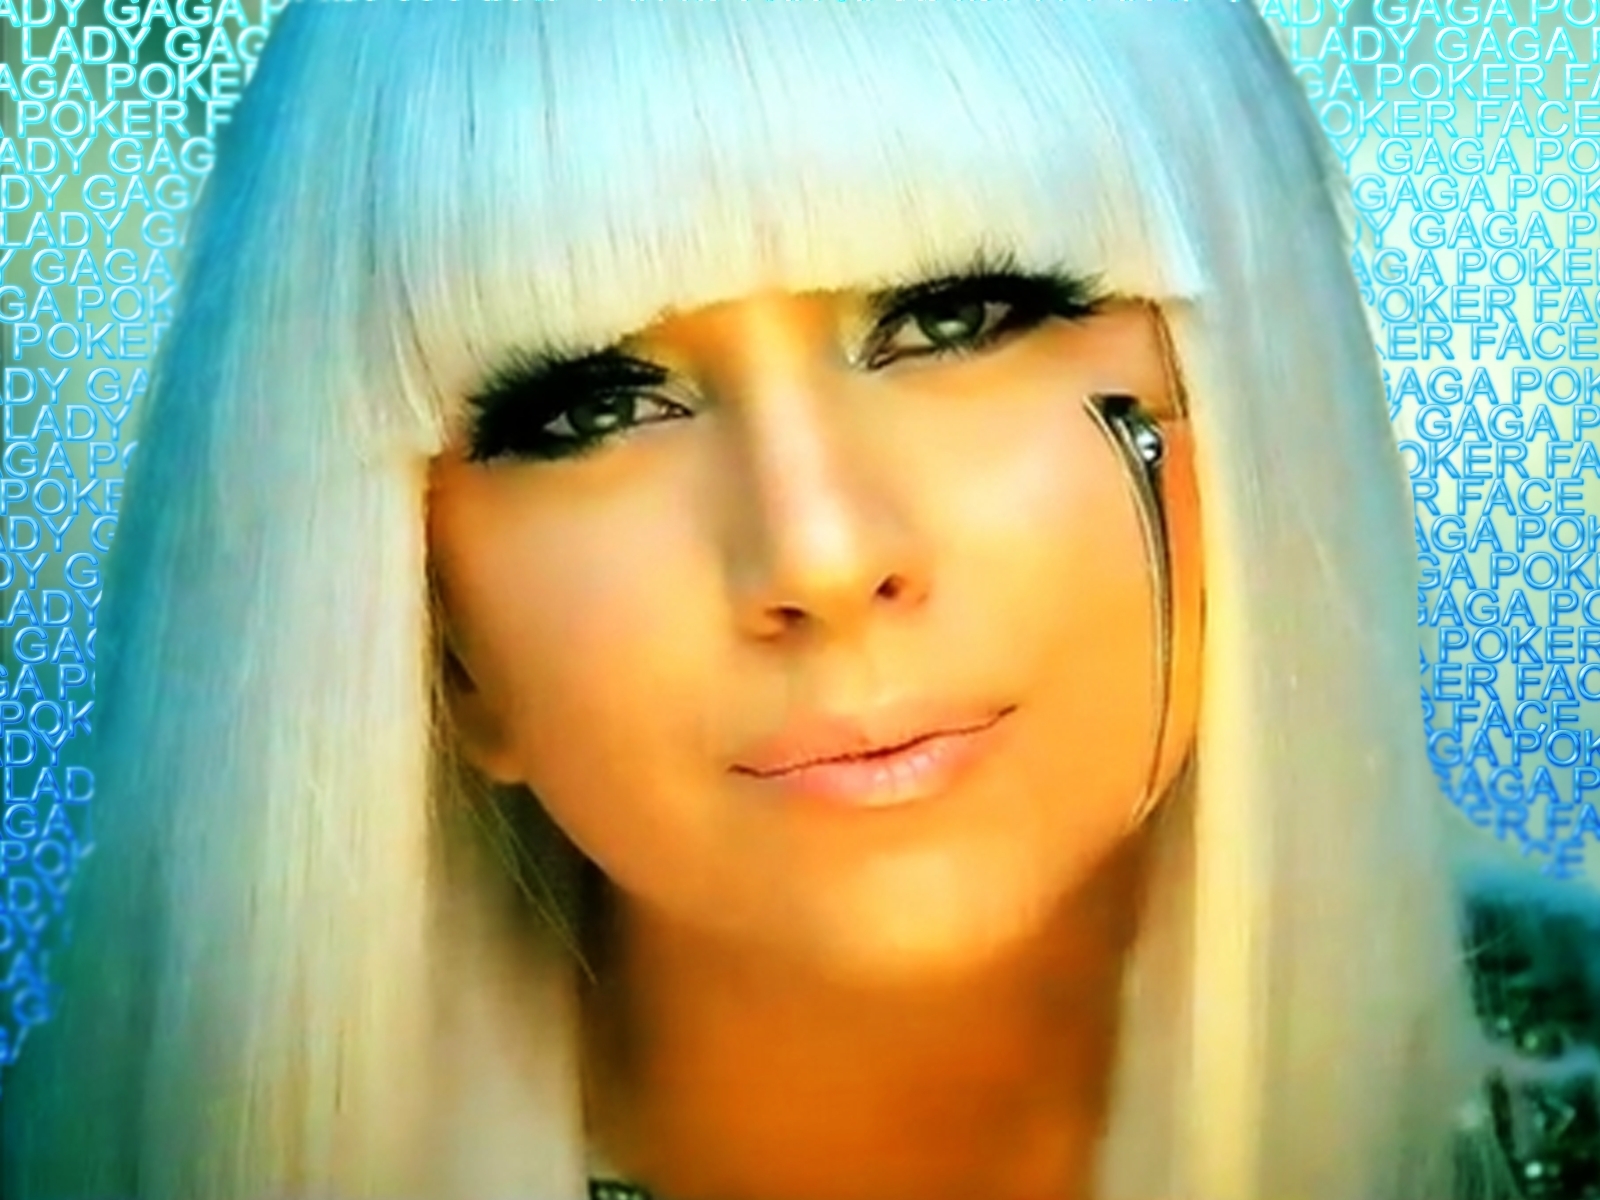 2. Lady Gaga - wide 11